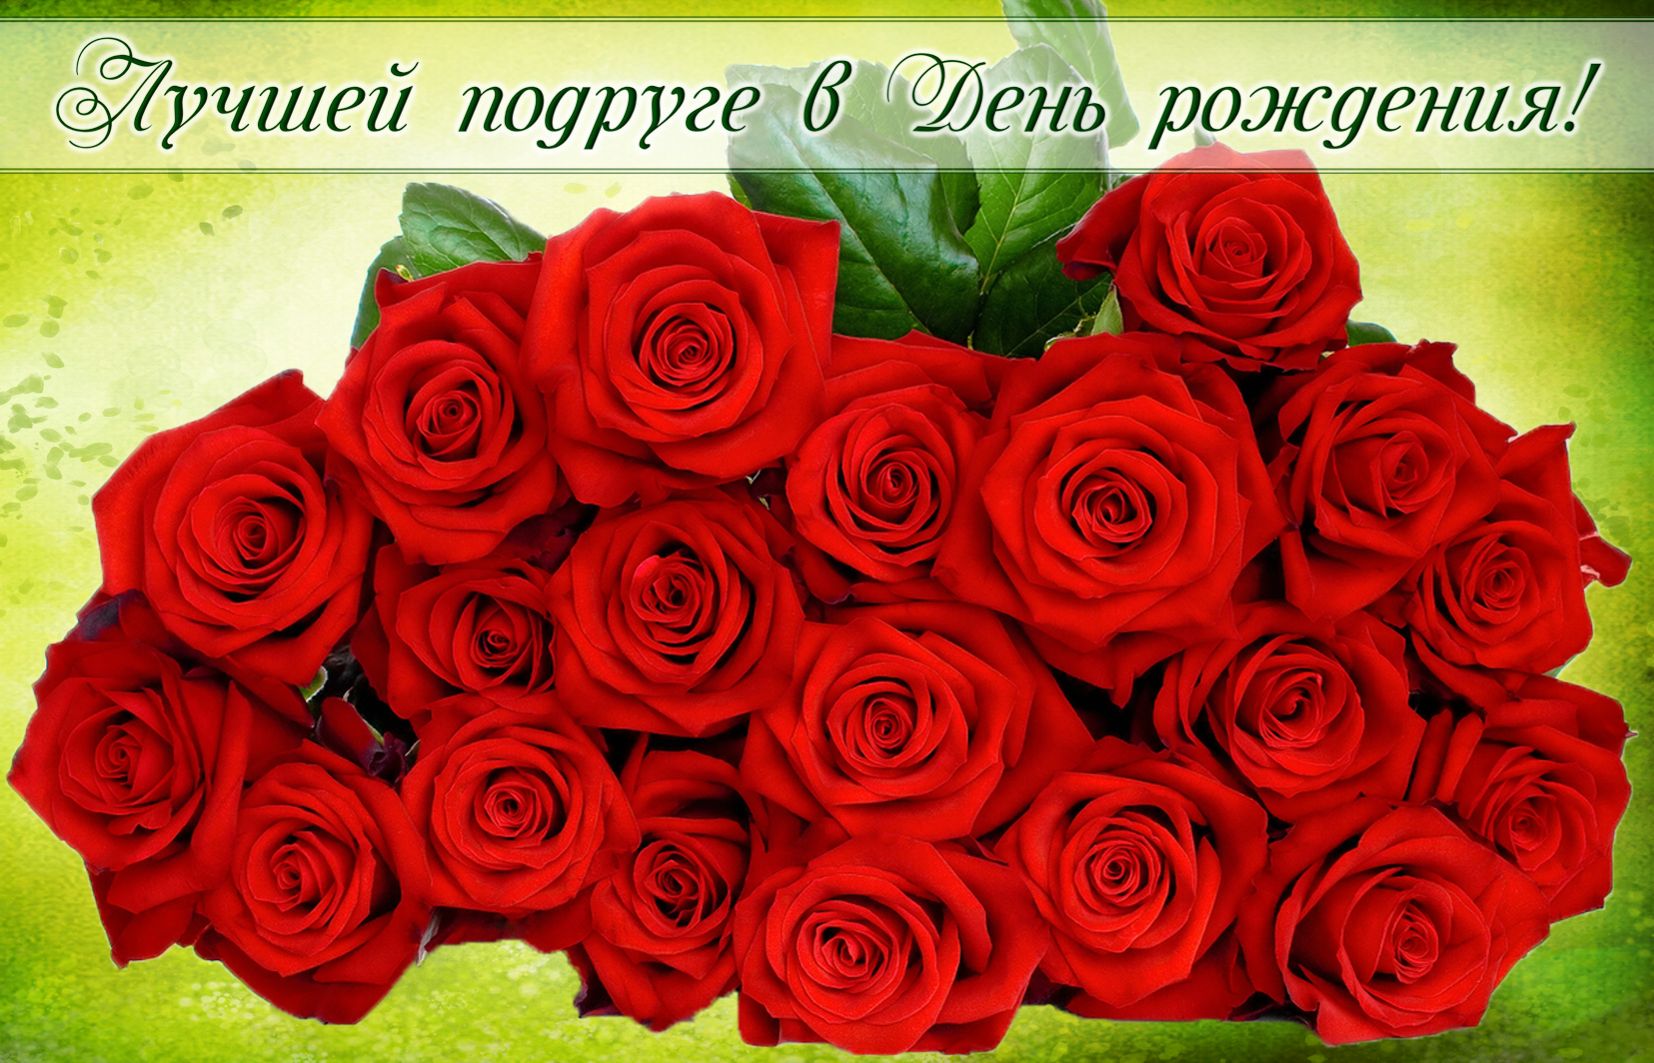 Огромный букет красных роз для лучшей подруги